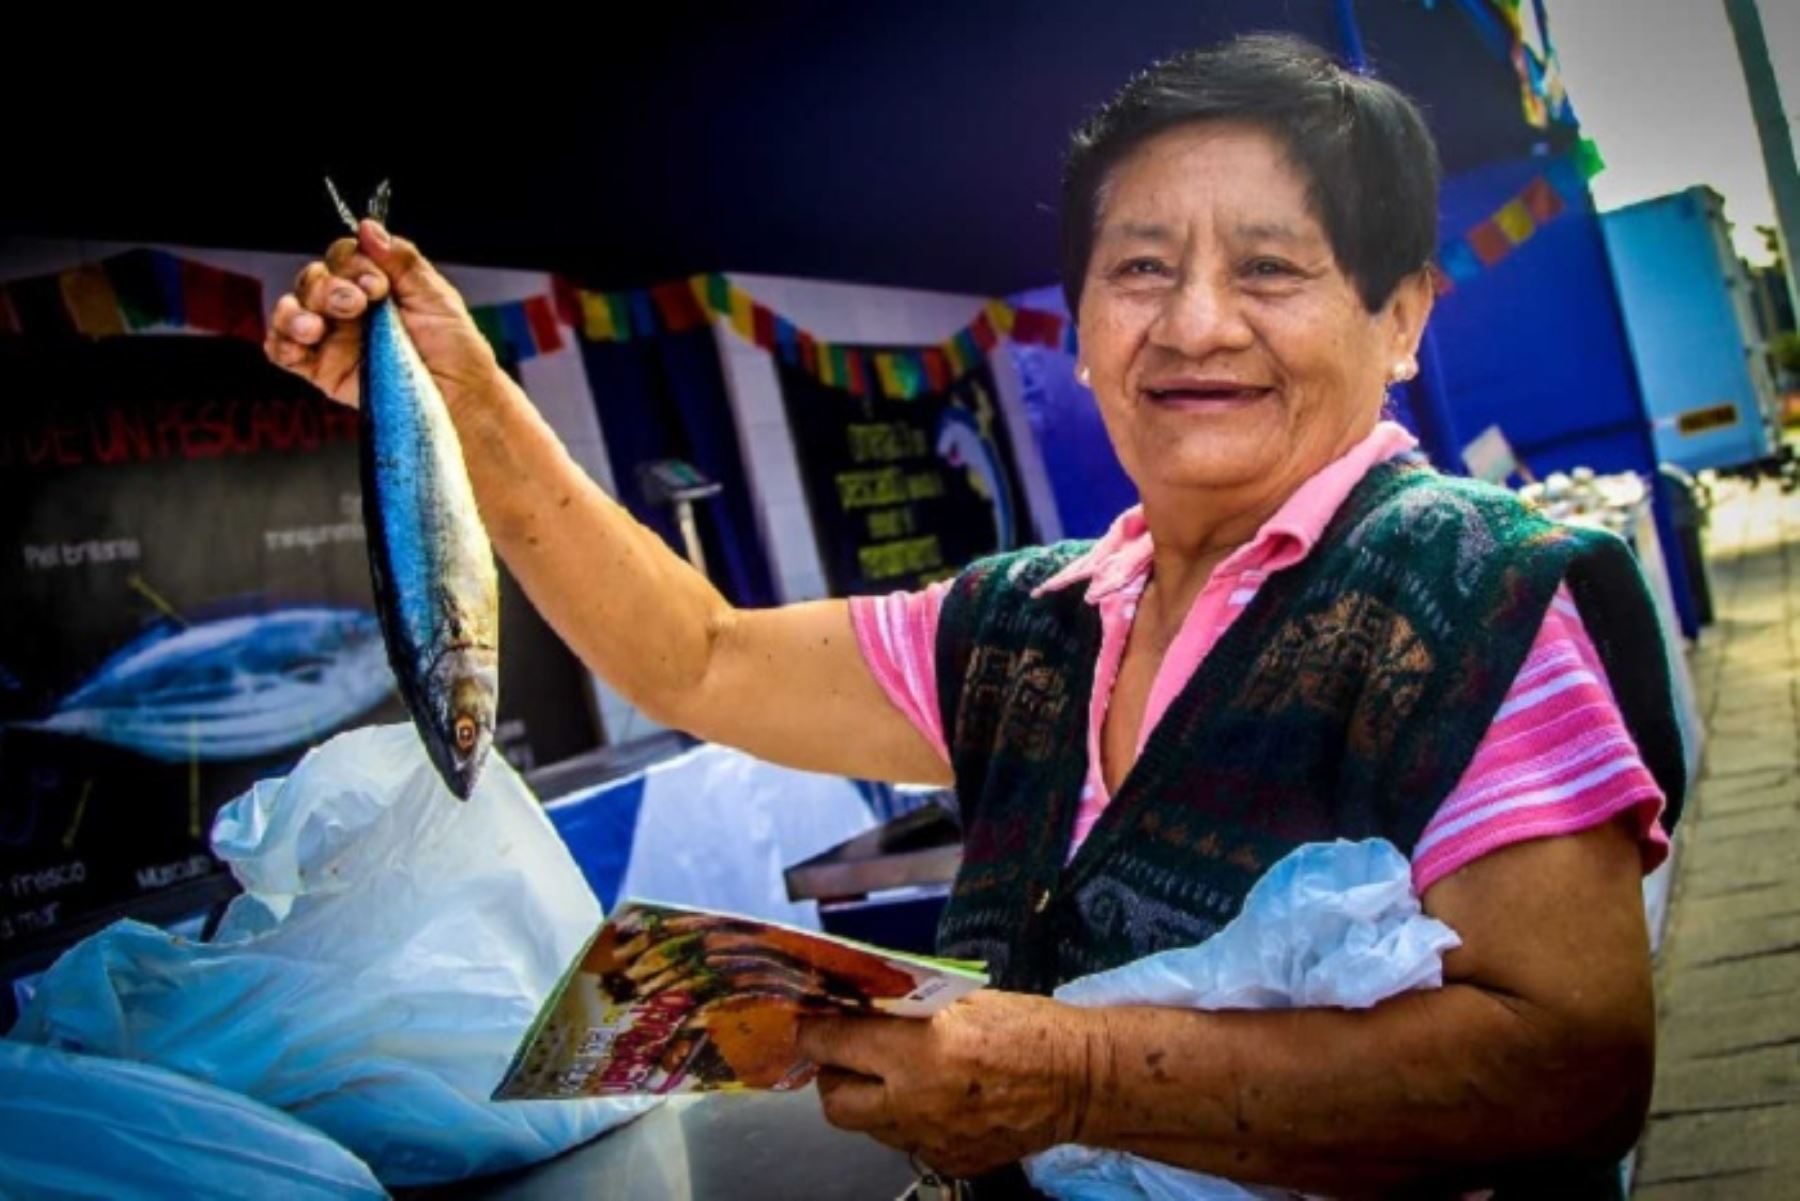 El festival “Mi Pescadería” llega a Cusco para ofrecer a la comunidad de Ccorao, en el distrito de San Sebastián, 800 kilos de pescado de alta calidad nutricional desde S/ 4 el kilo, gracias al Ministerio de la Producción, a través del Programa Nacional “A Comer Pescado”.